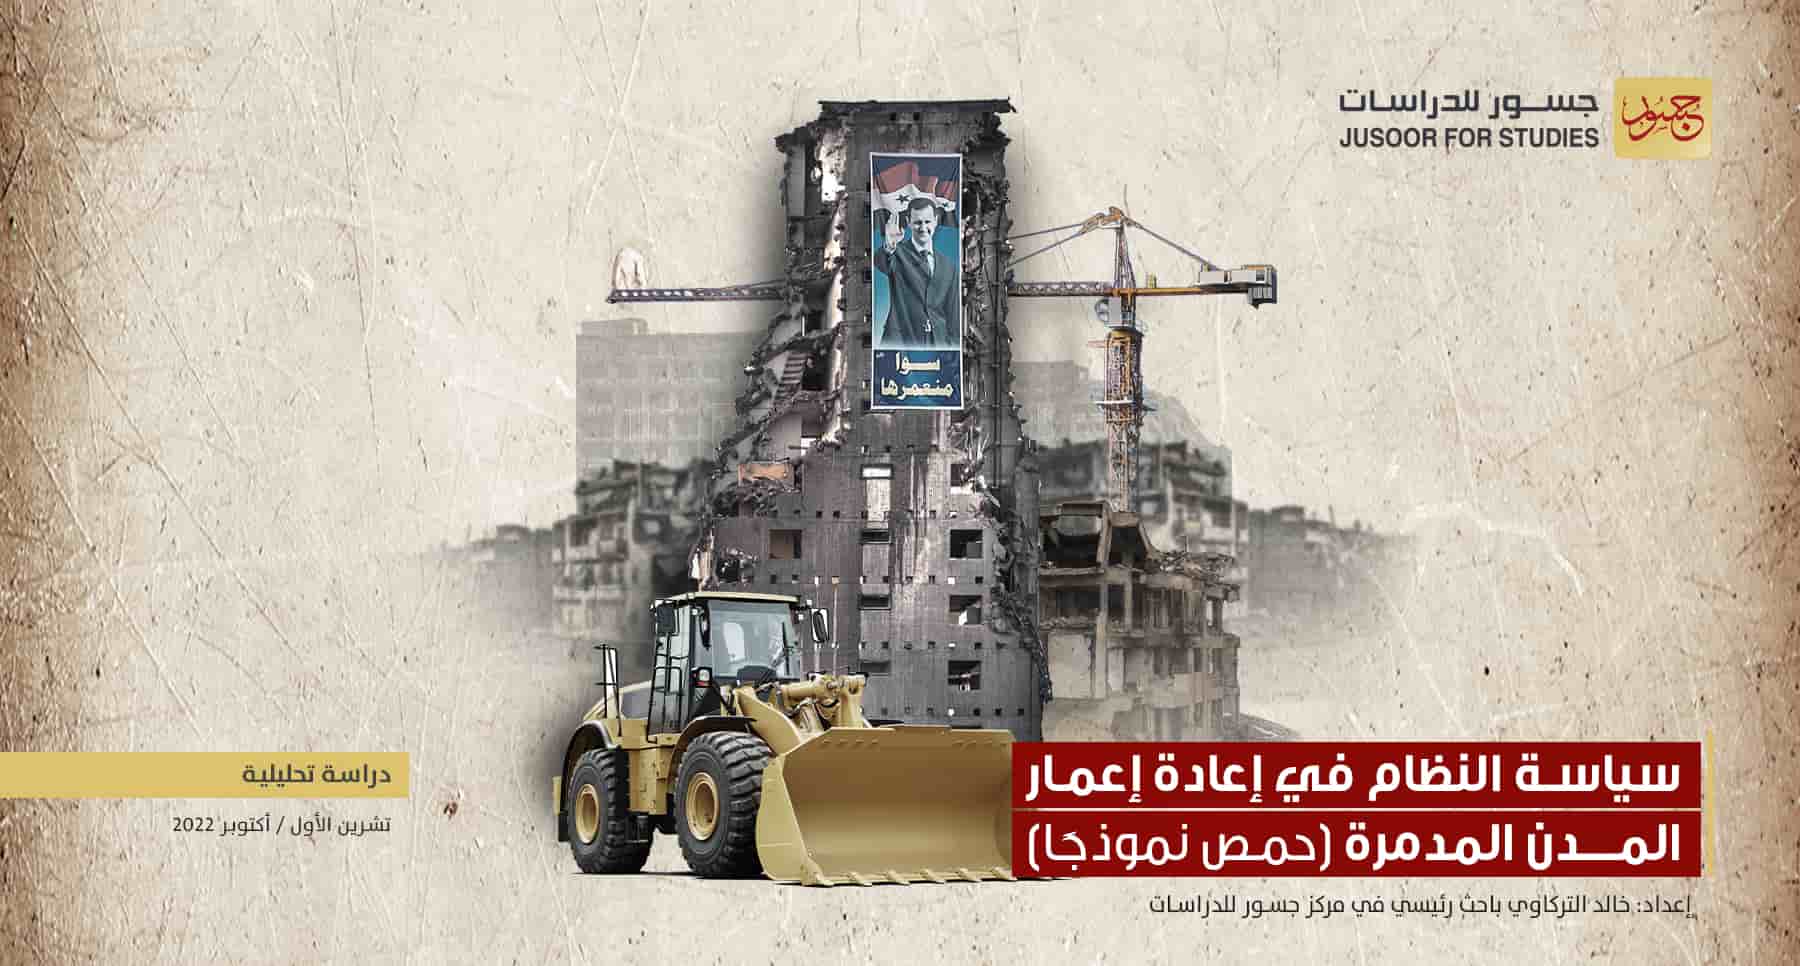 سياسة النظام في إعادة إعمار المدن المدمرة (حمص نموذجاً)